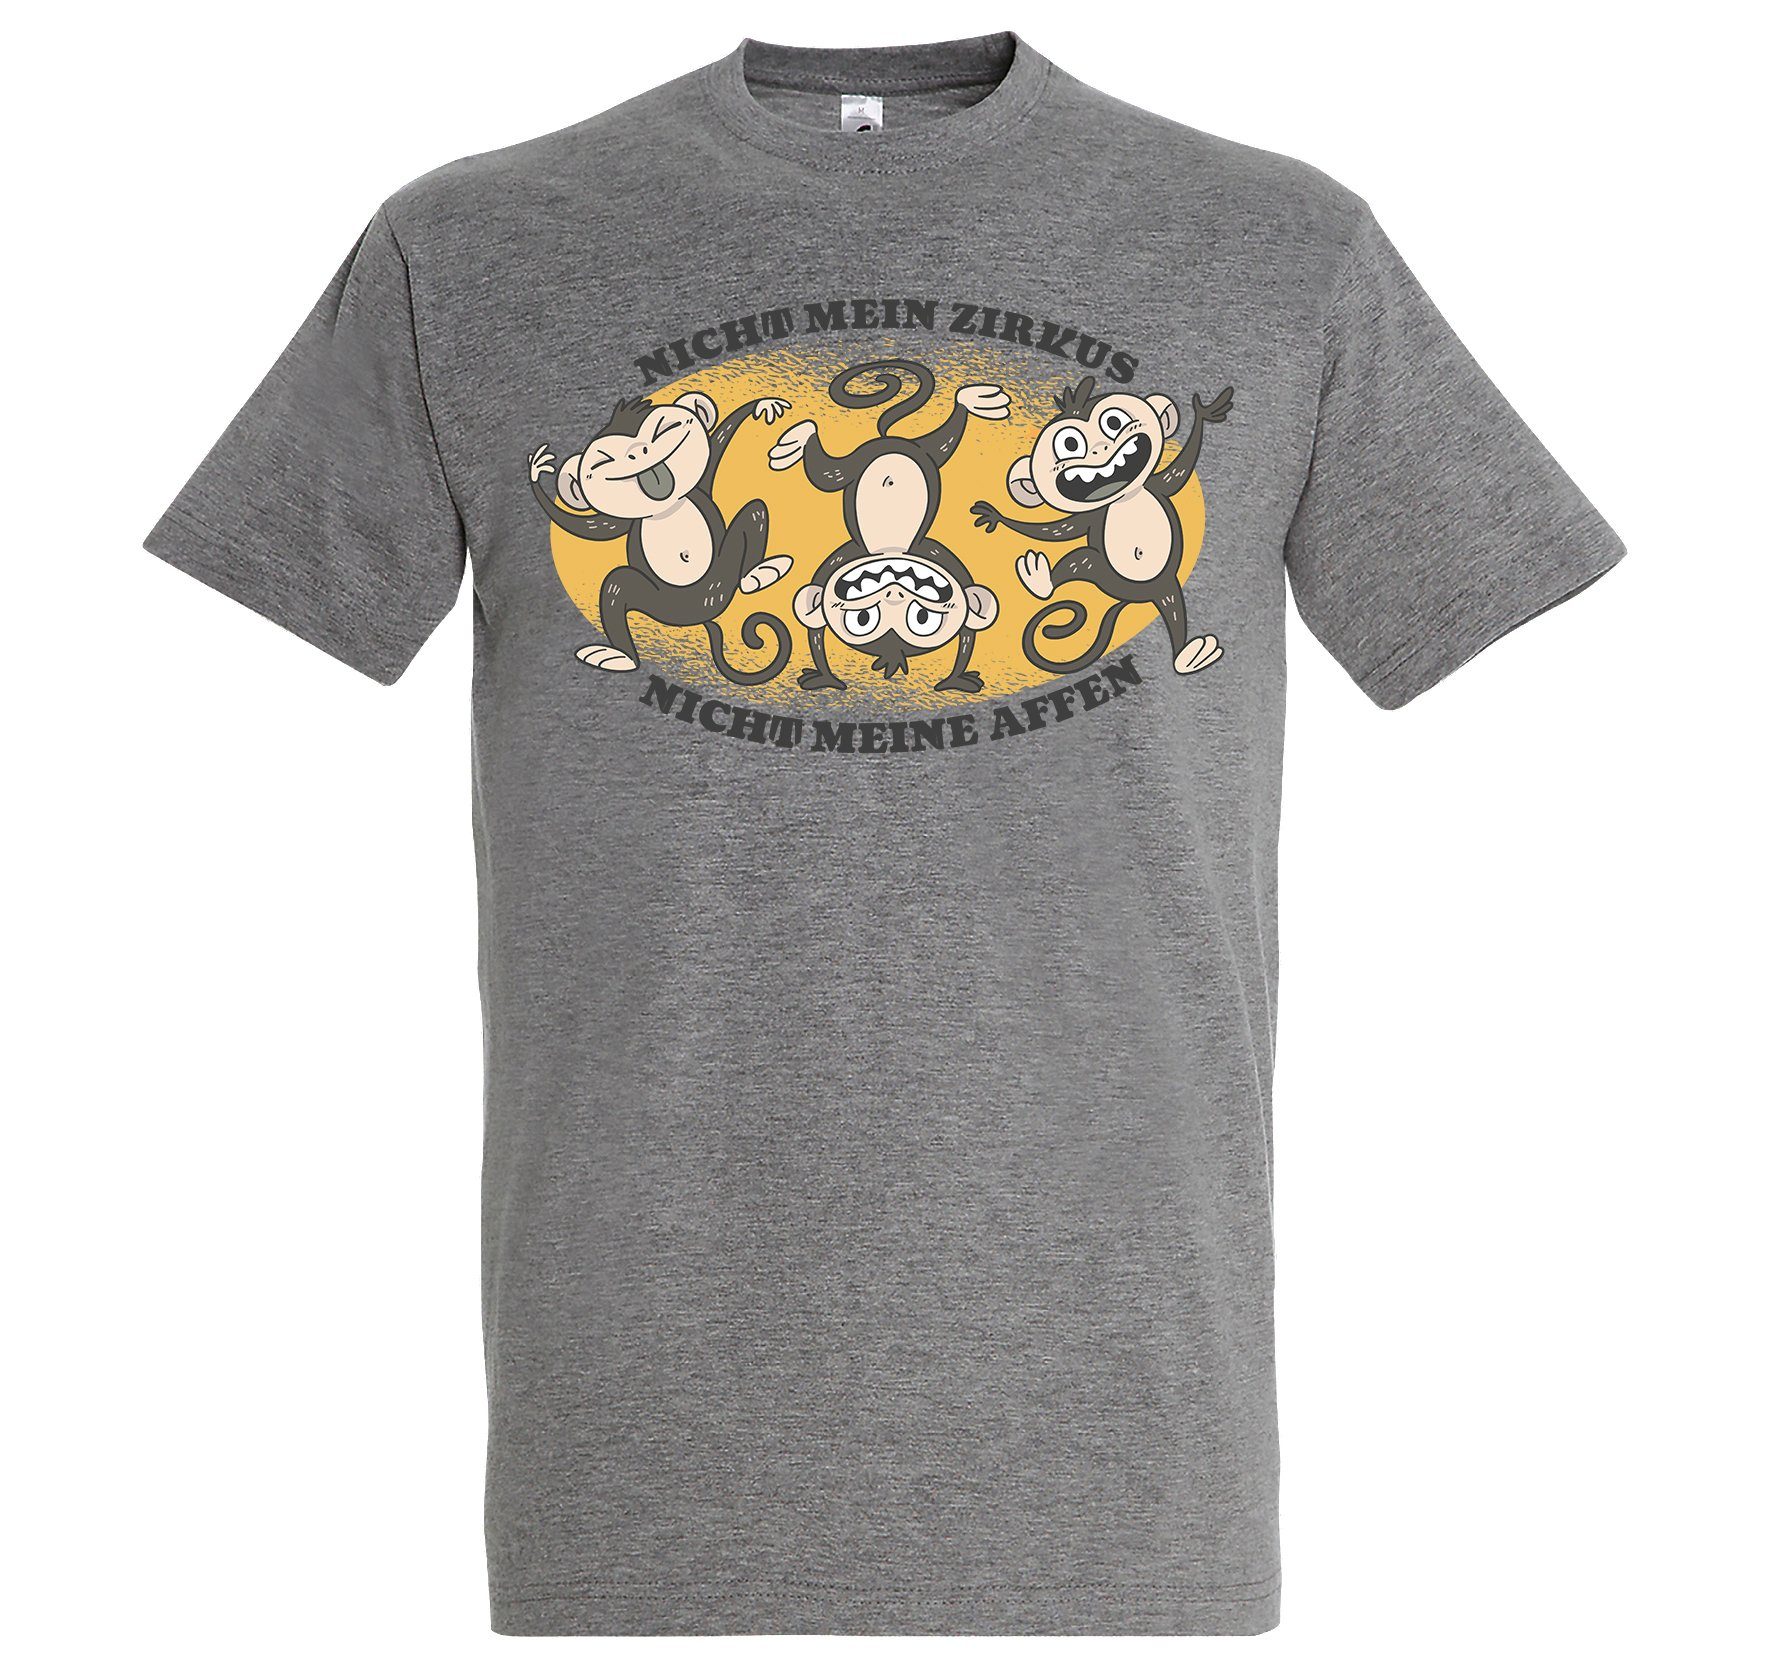 Youth Designz Print-Shirt "Nicht mein Zirkus" Herren T-Shirt mit lustigem Spruch Grau | T-Shirts